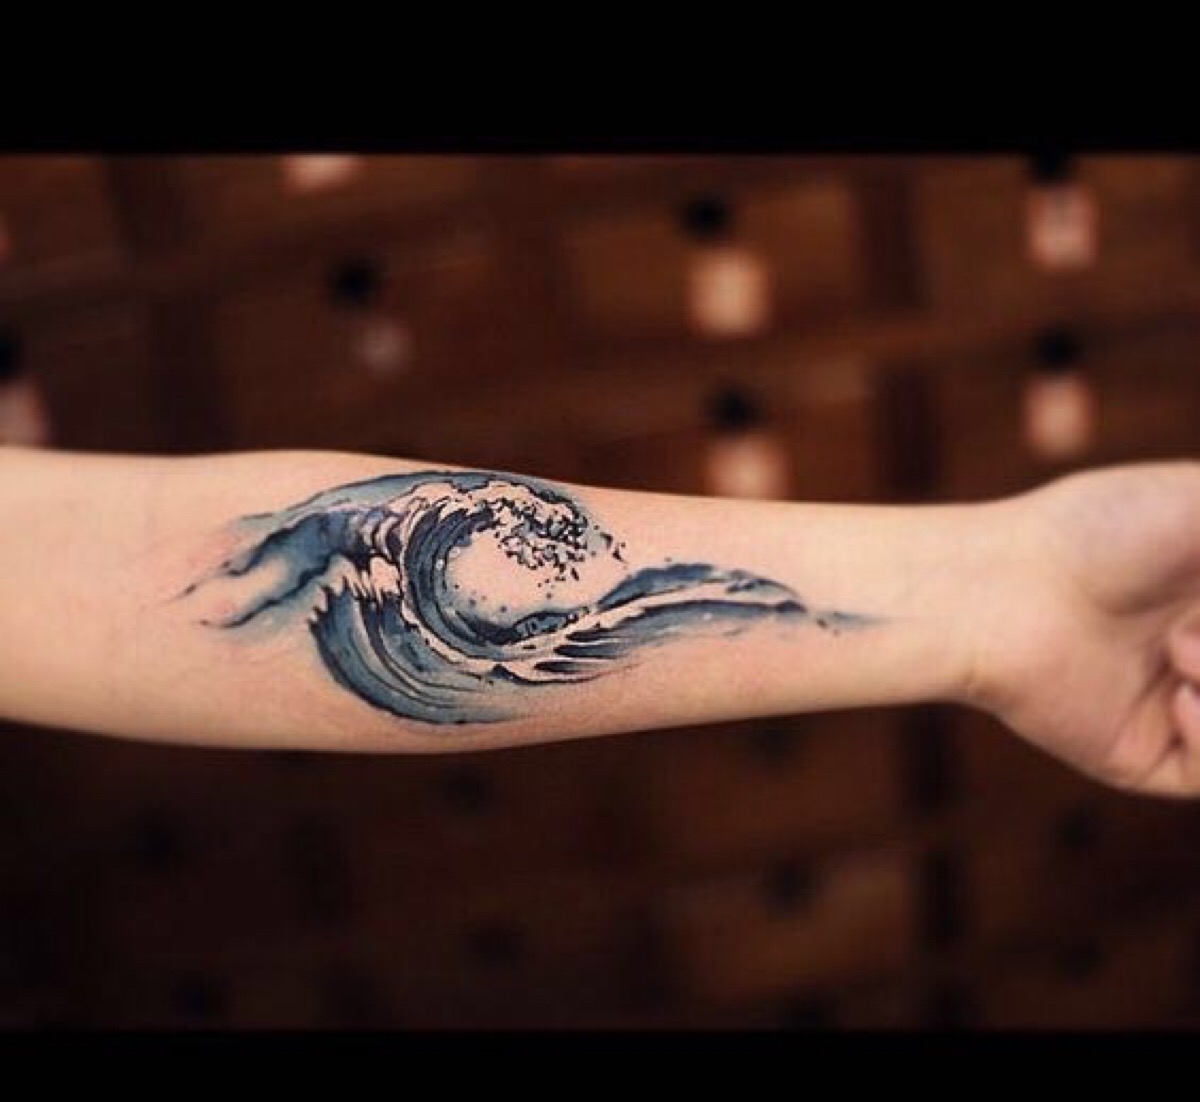 浪花纹身 水彩纹身 纹身 刺青 武汉纹身 湖北纹身 纹身图集 纹身素材